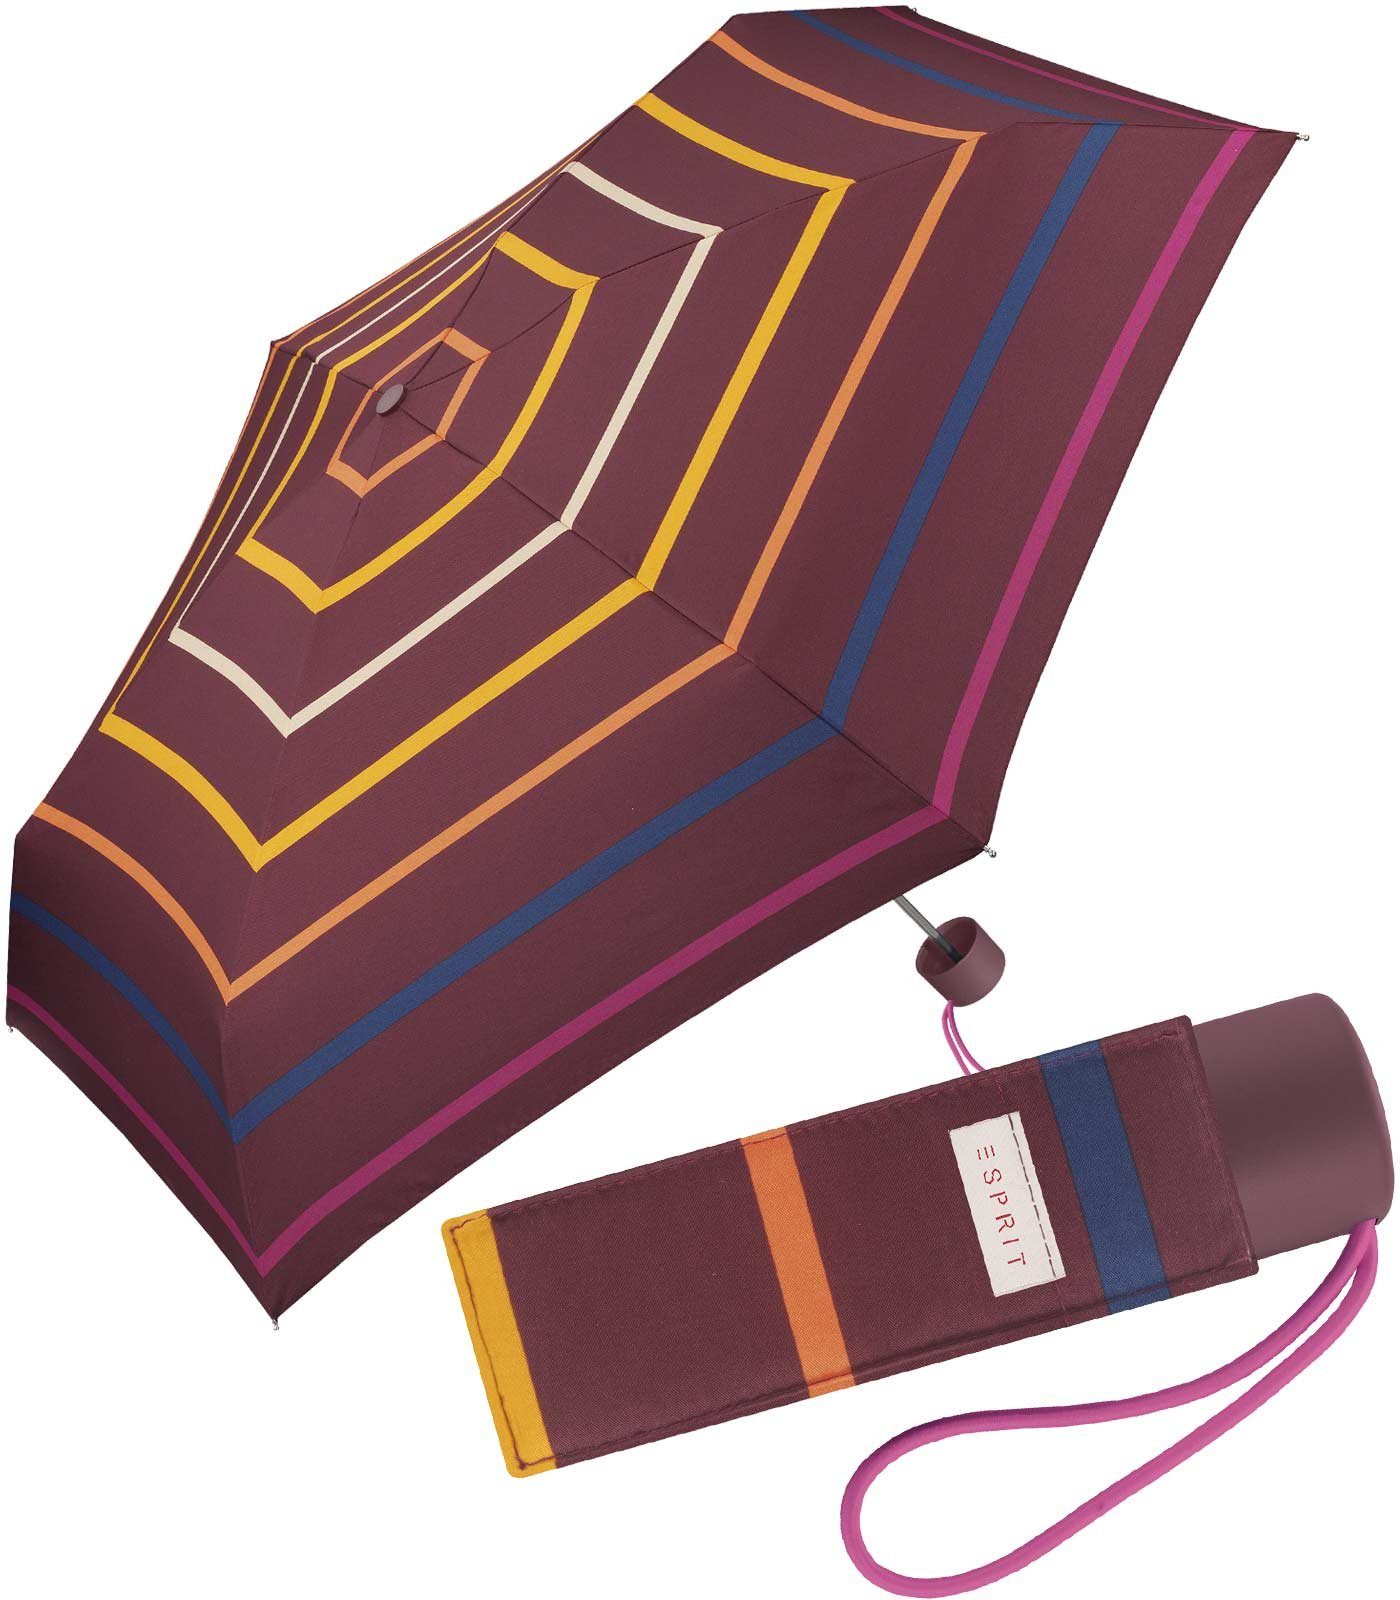 Schirm bordeaux warmen stabil, Damen, leicht, Taschenregenschirm kleiner, Streifen mit Farbtönen in für handlicher Esprit